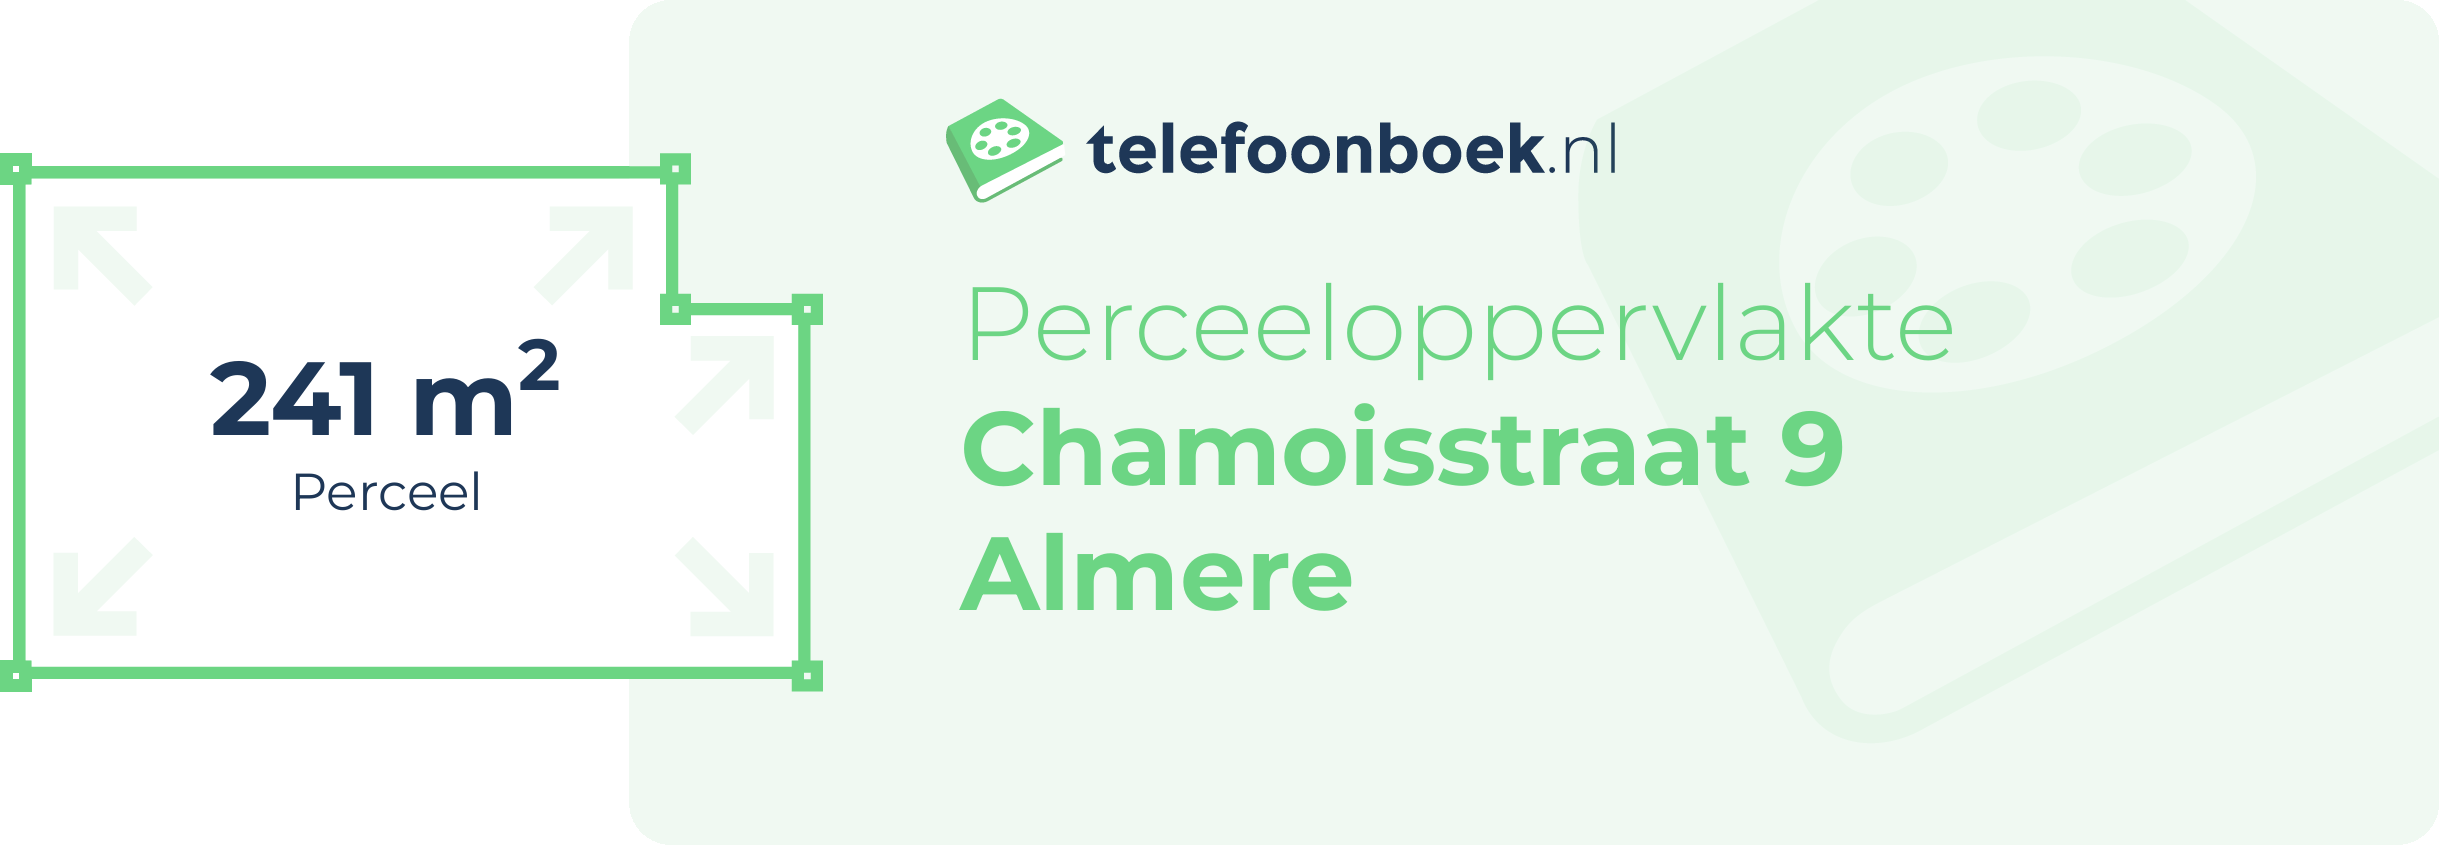 Perceeloppervlakte Chamoisstraat 9 Almere